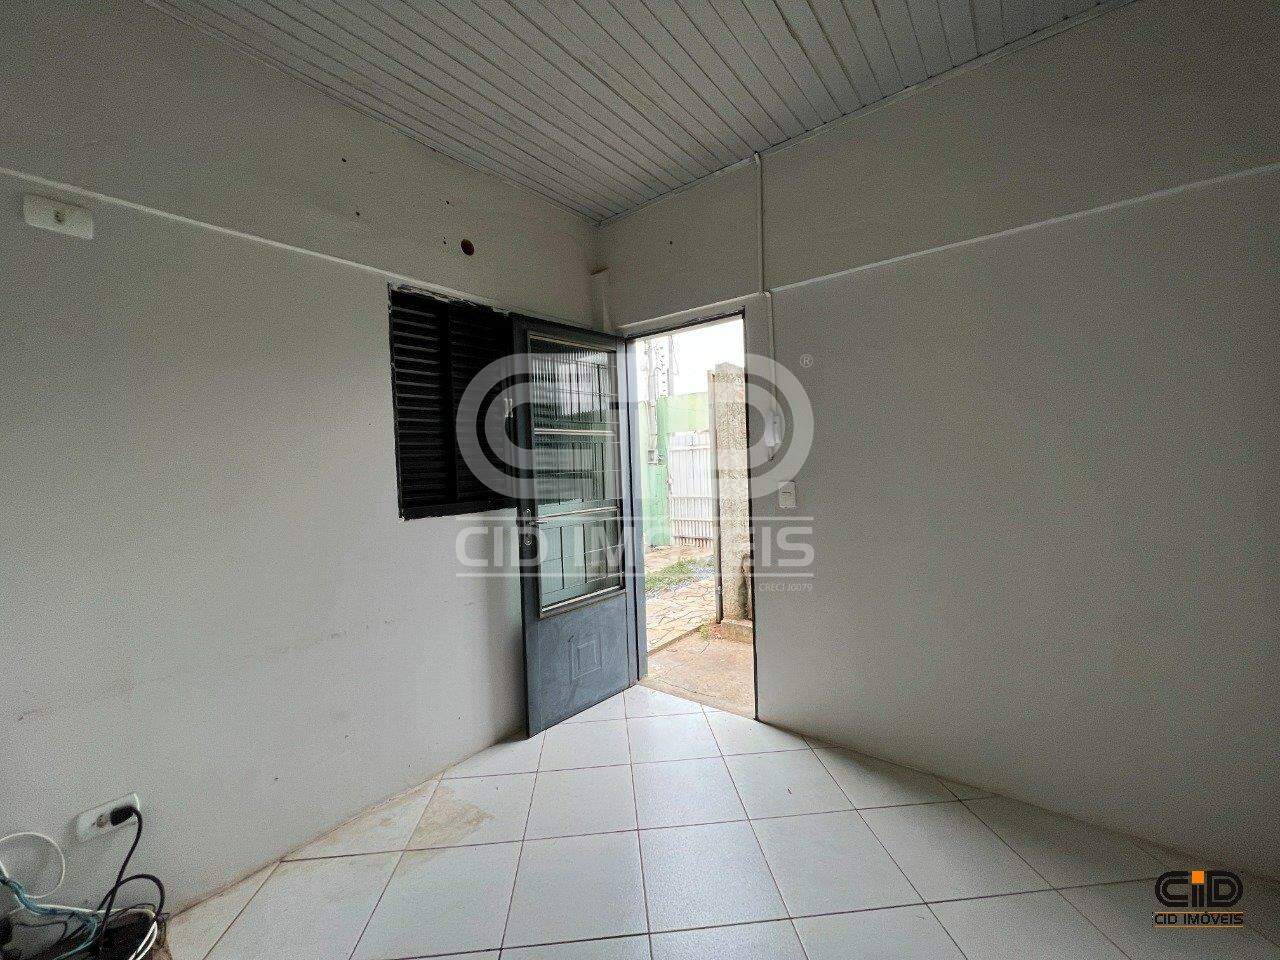 Casa, 4 quartos, 168 m² - Foto 2